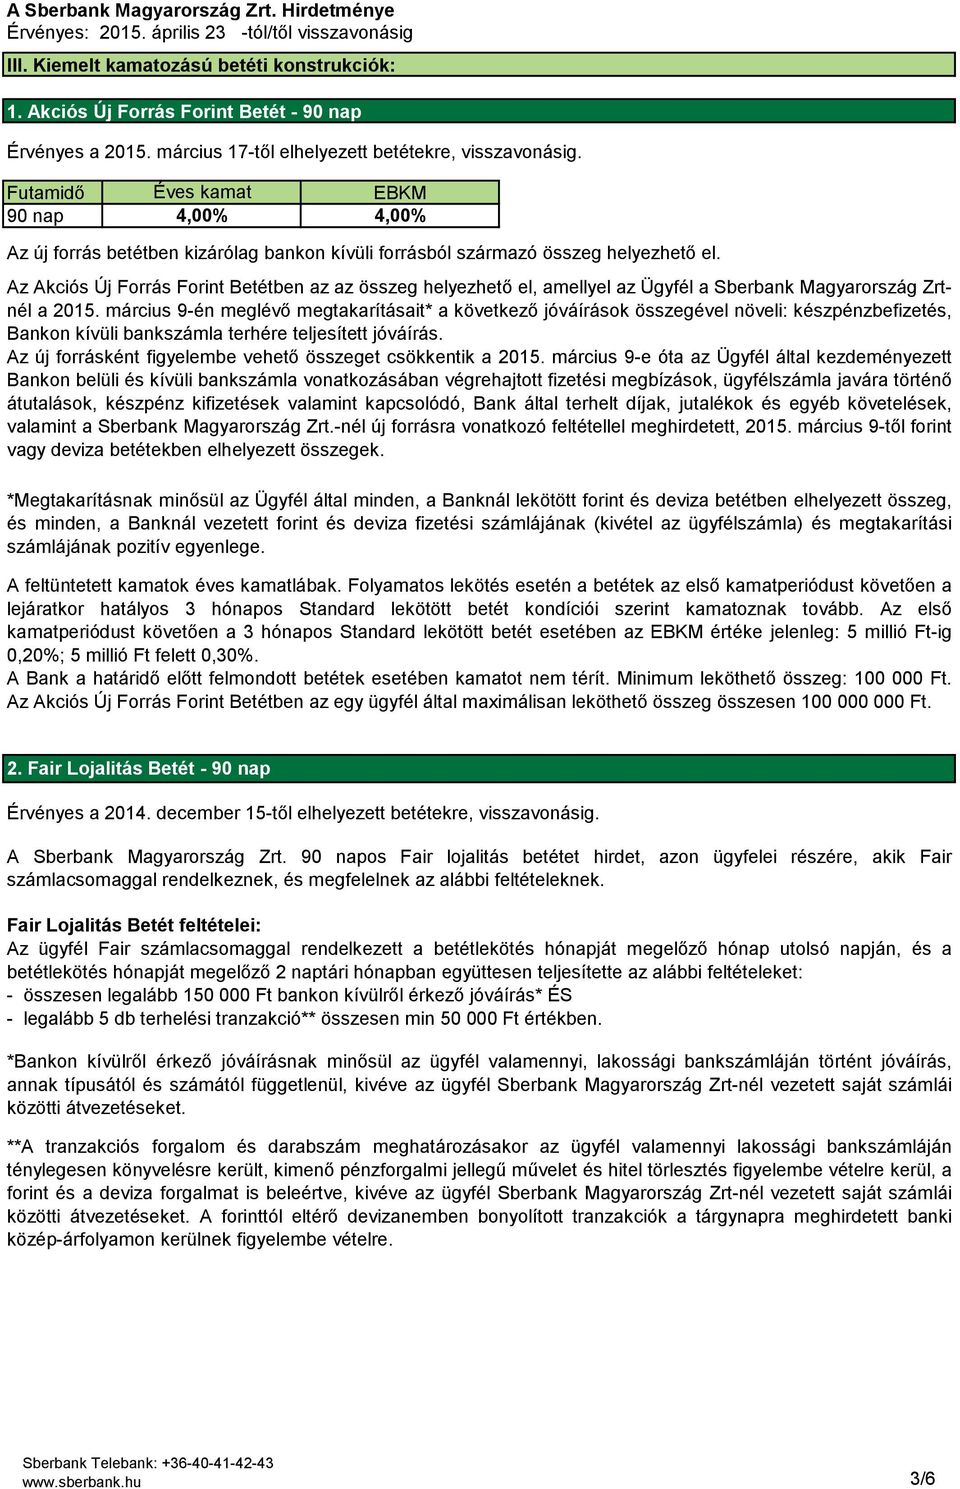 Az Akciós Új Forrás Forint Betétben az az összeg helyezhető el, amellyel az Ügyfél a Sberbank Magyarország Zrtnél a 2015.